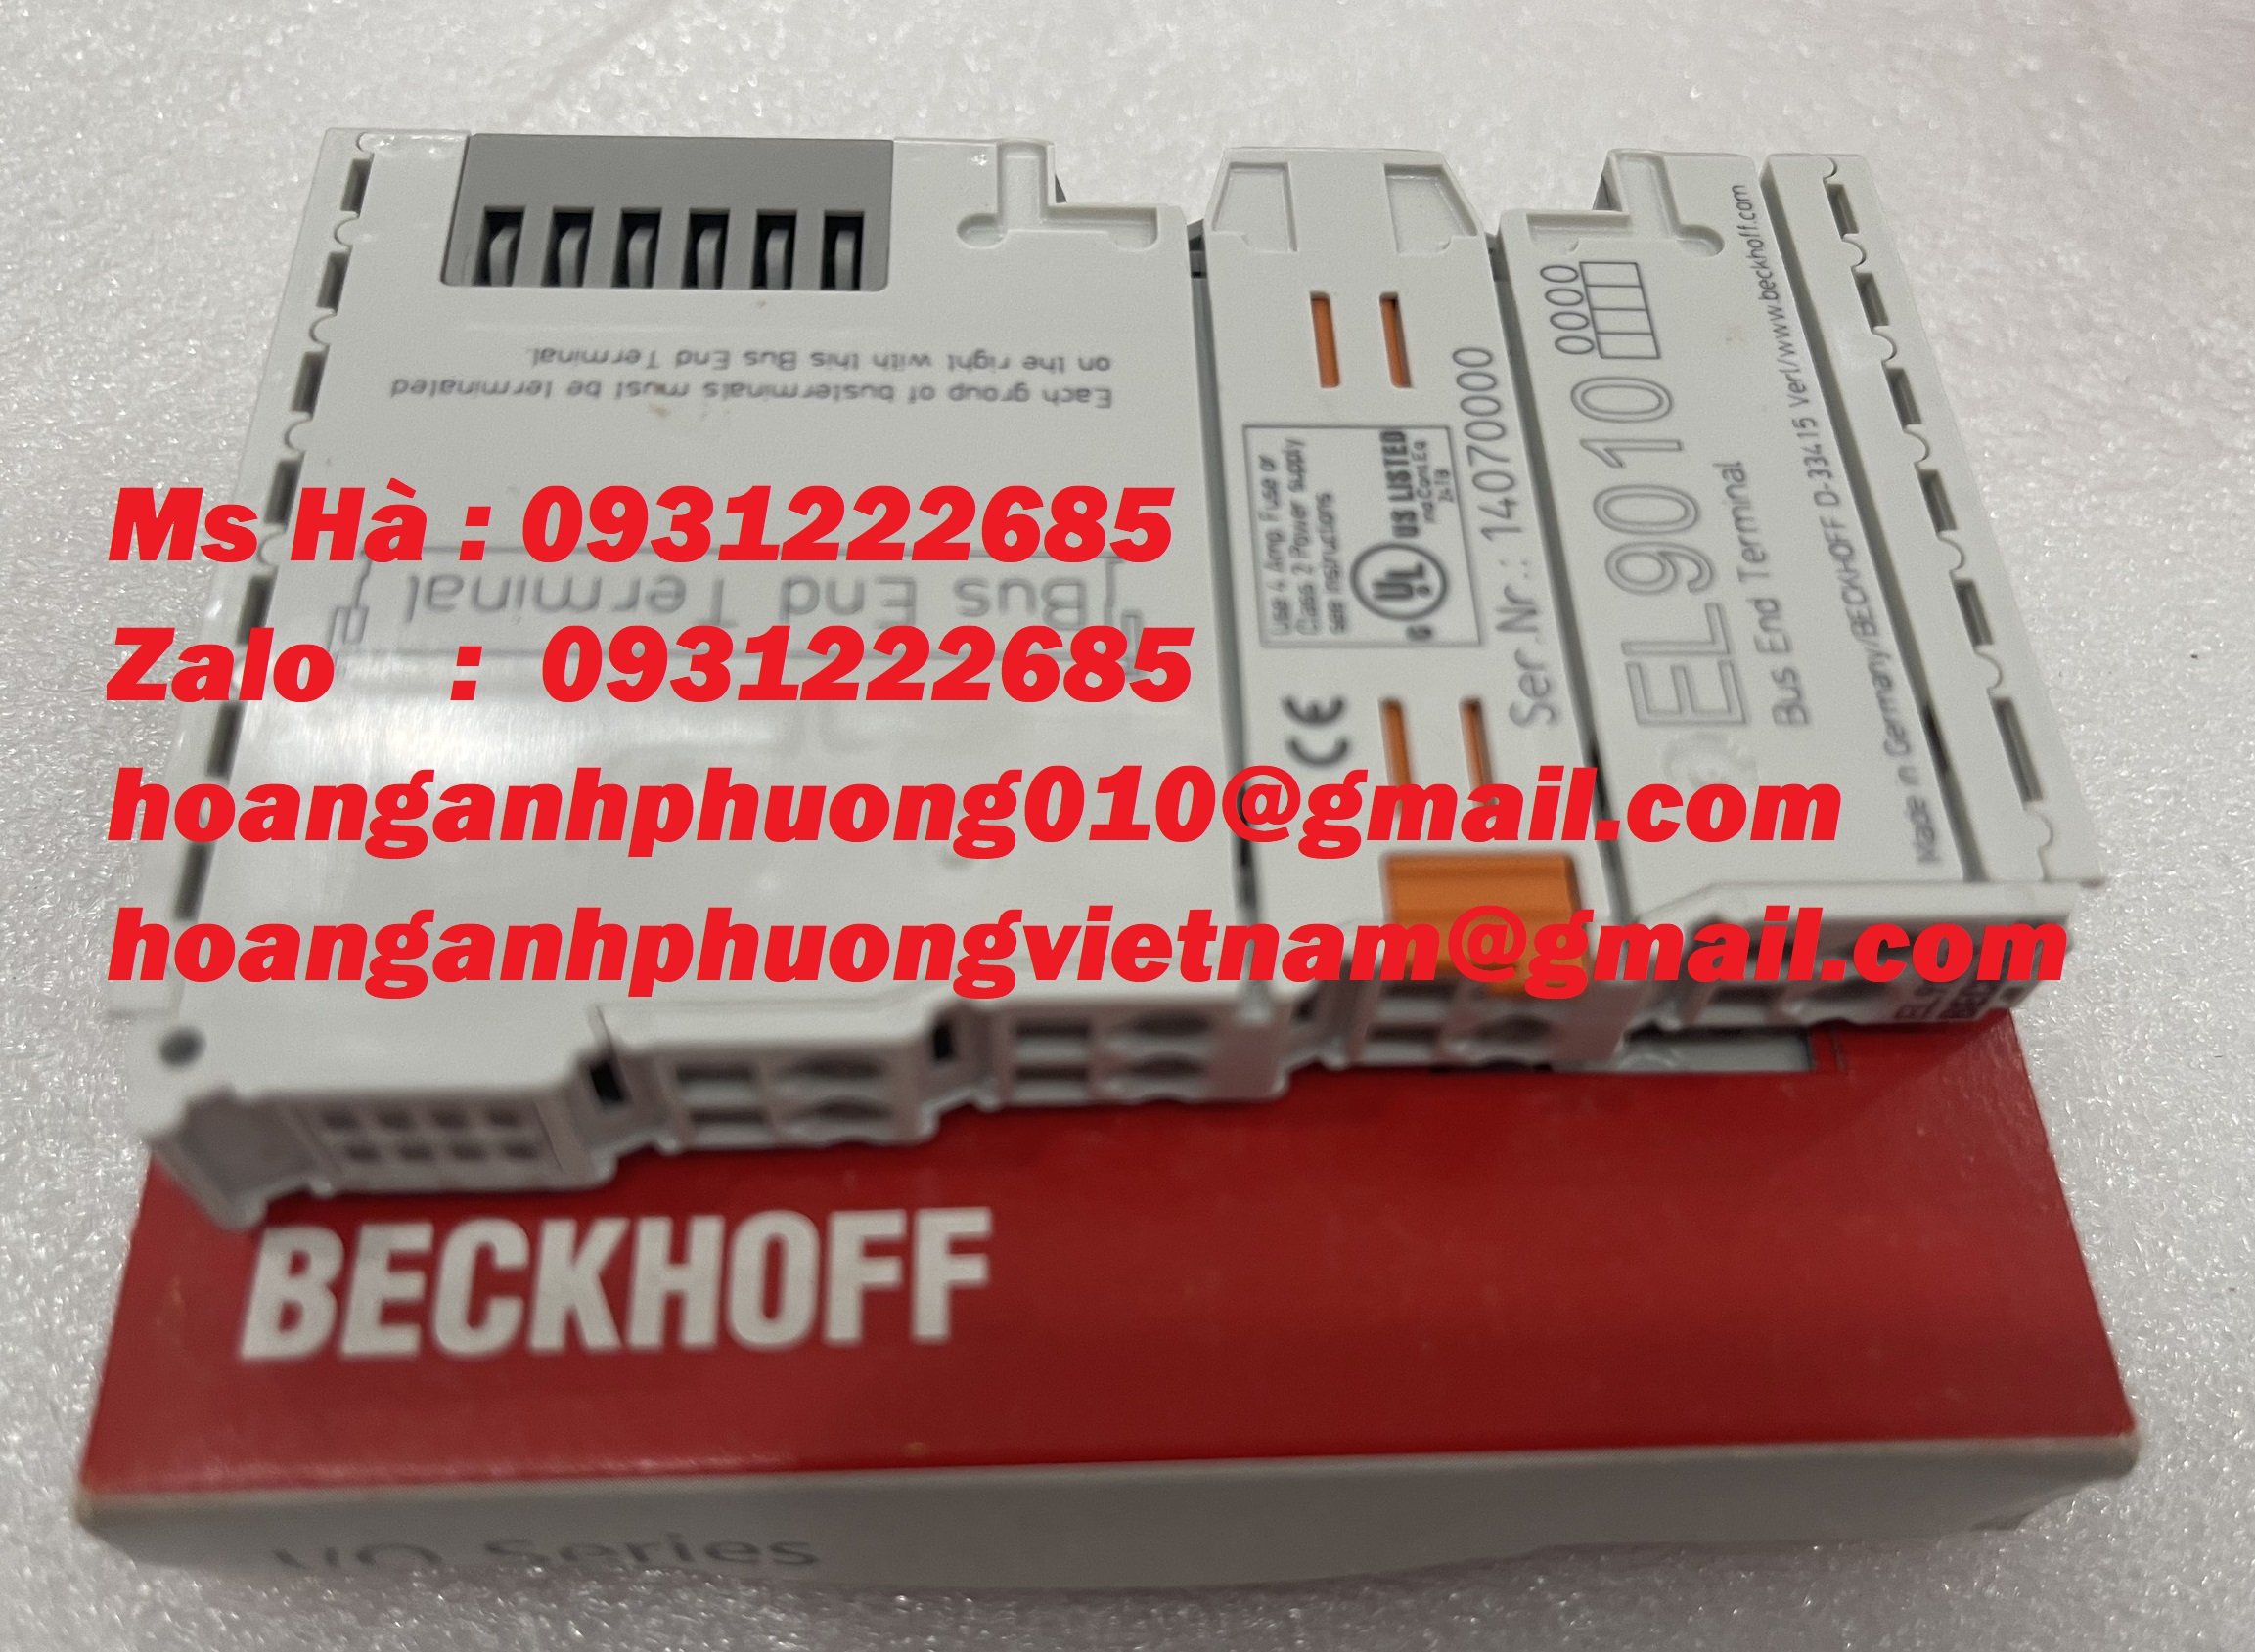 Module EL9010 beckhoff - giá tốt toàn quốc - hàng nhập khẩu